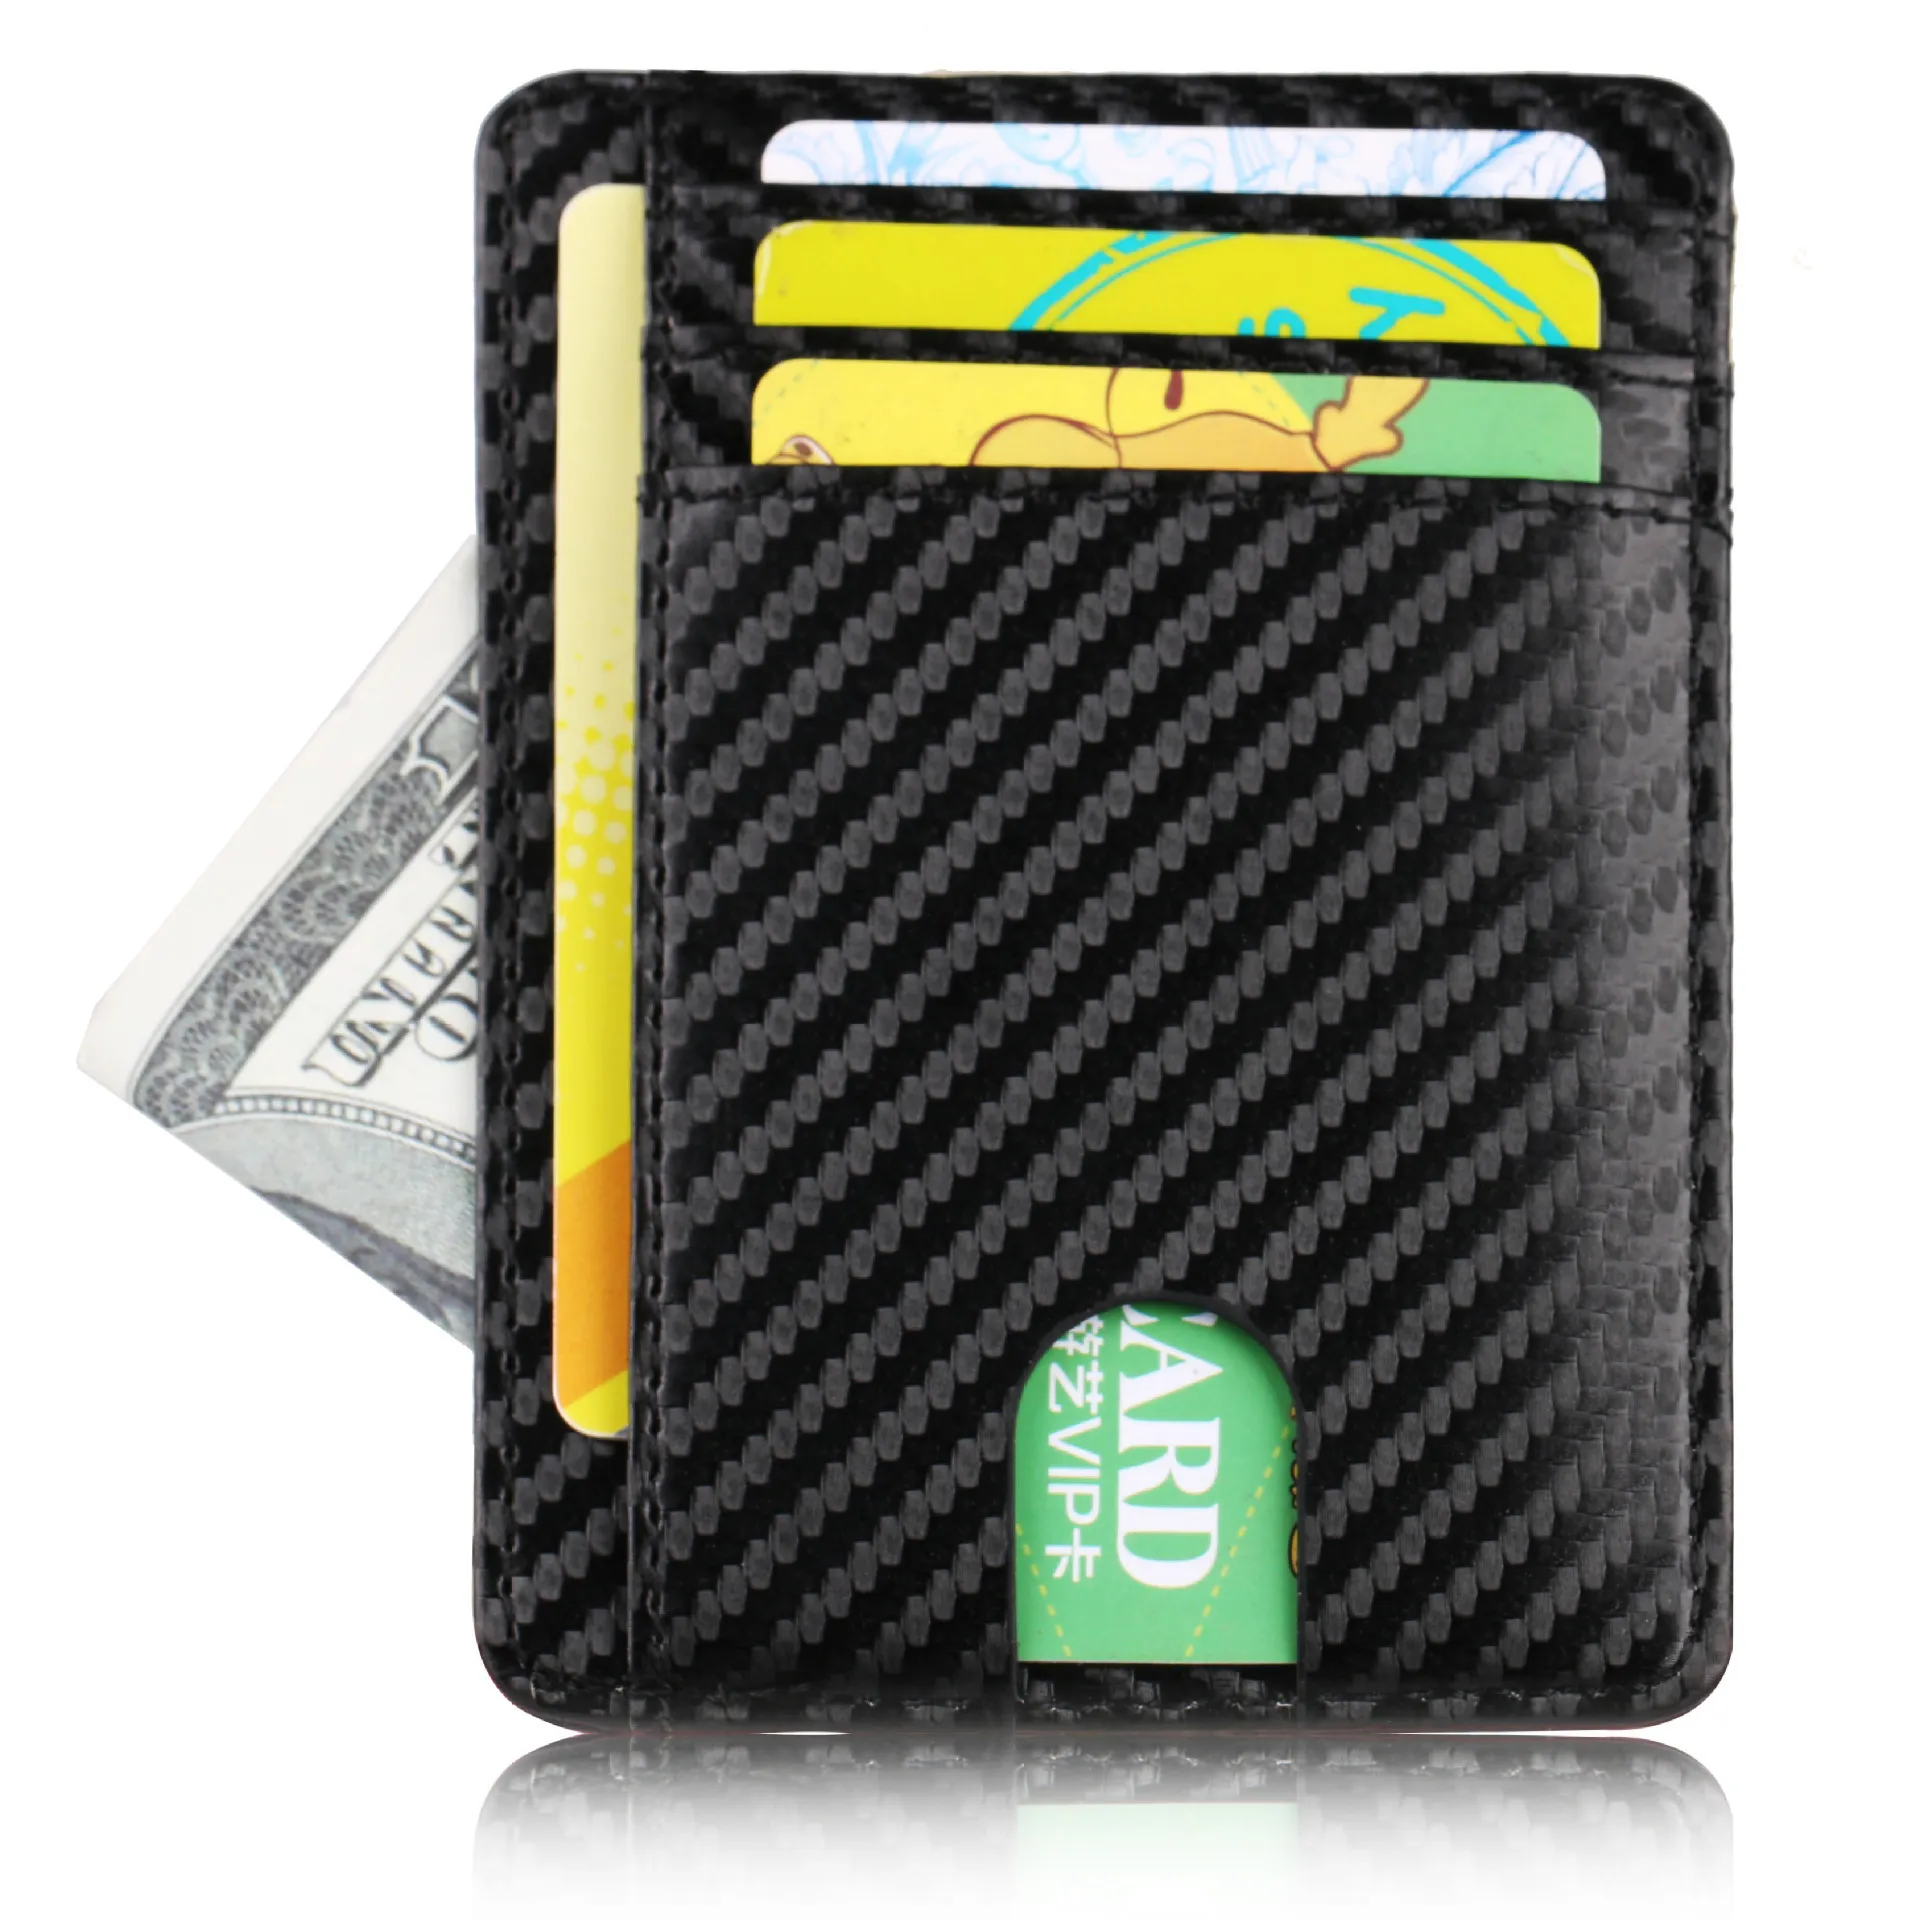 탄소 섬유 패턴 남성 신용 카드 홀더 가죽 은행 카드 지갑 케이스 여성을위한 카드 소지자 보호 지갑